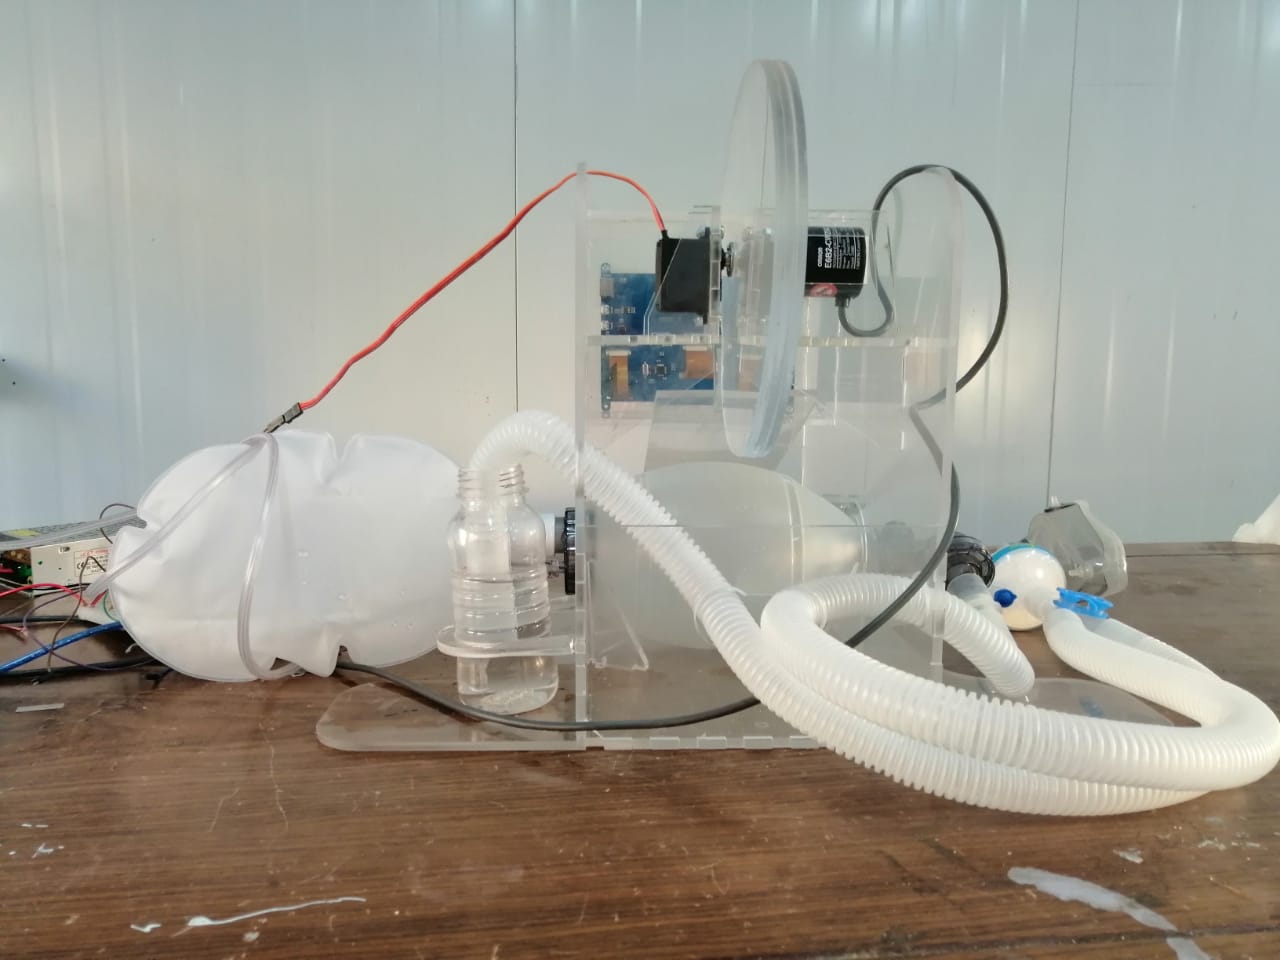 مدينة زويل تتمكن من تصنيع جهاز تنفس صناعى بمكونات محلية  (4)